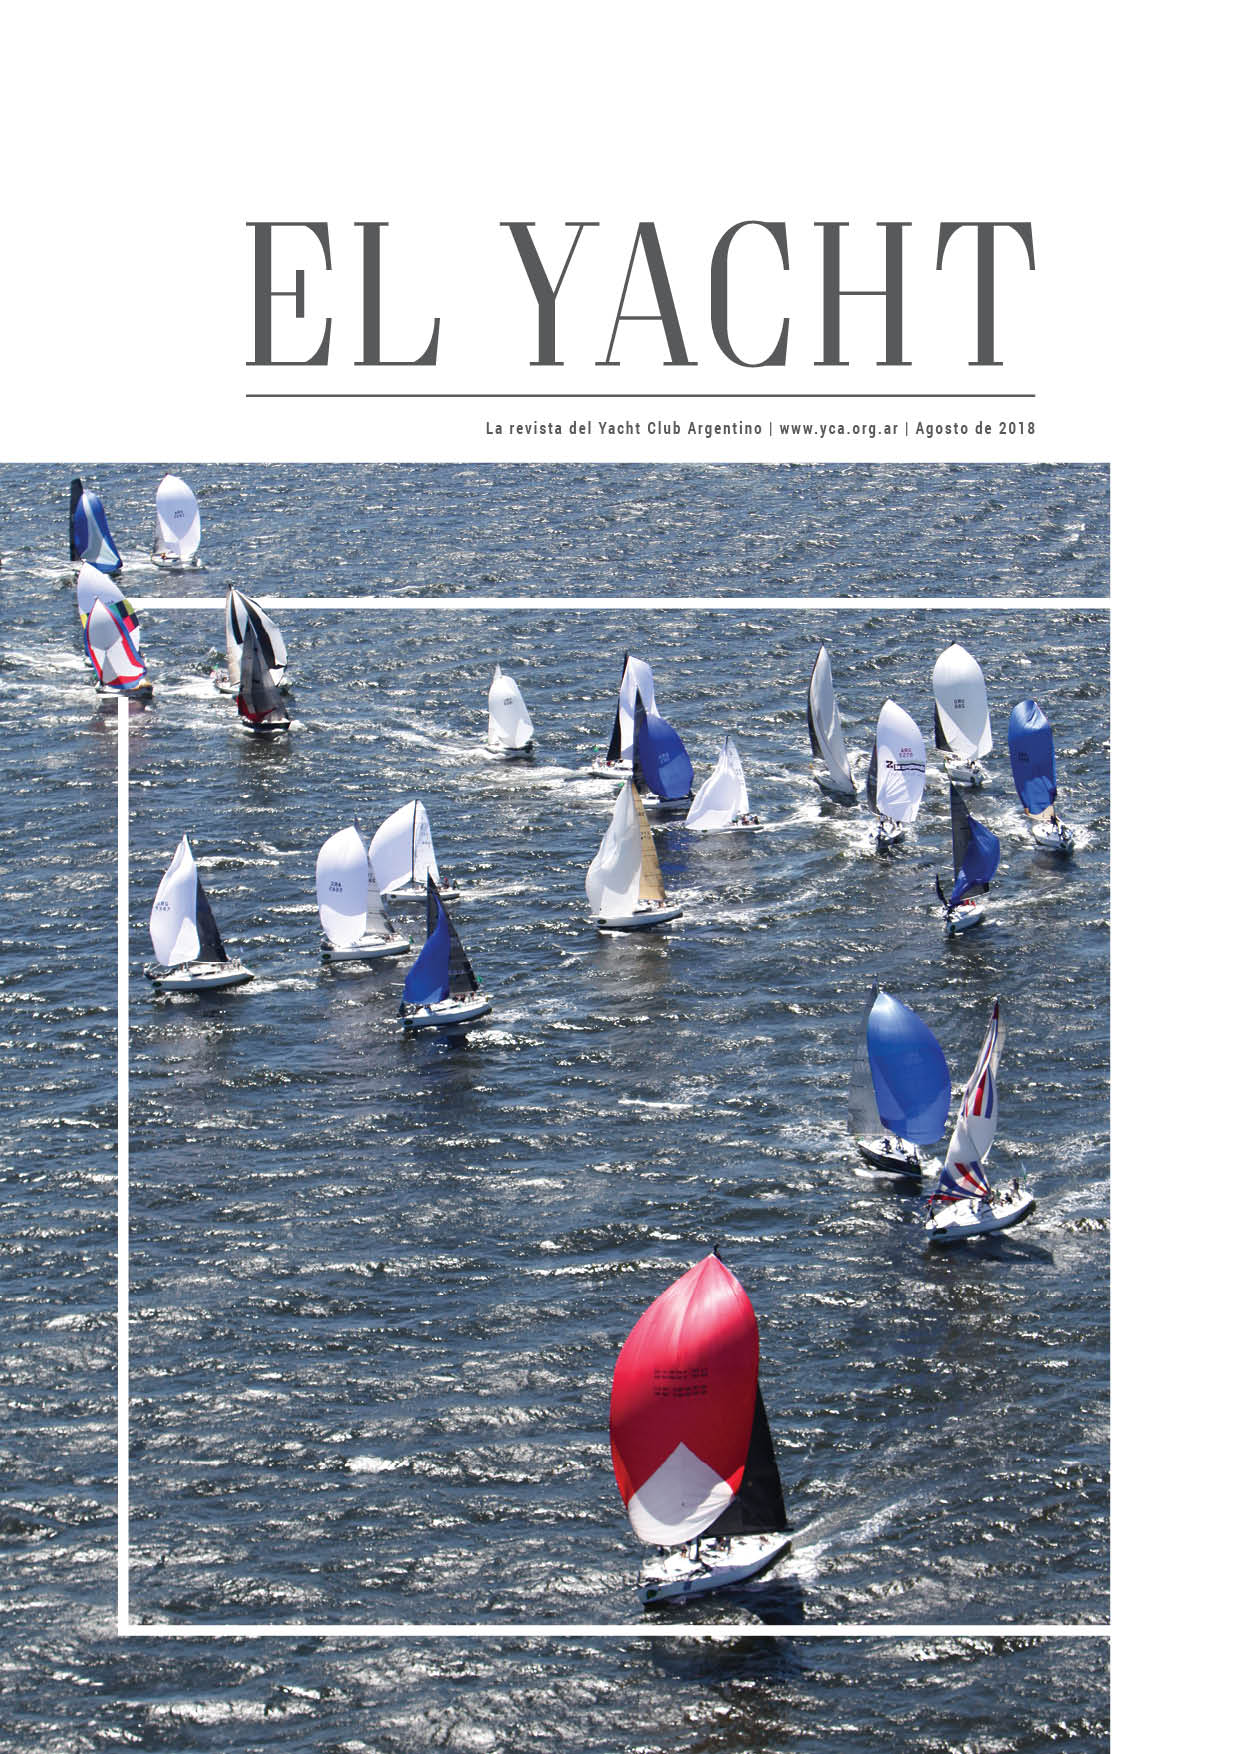 yacht club argentino san fernando telefono